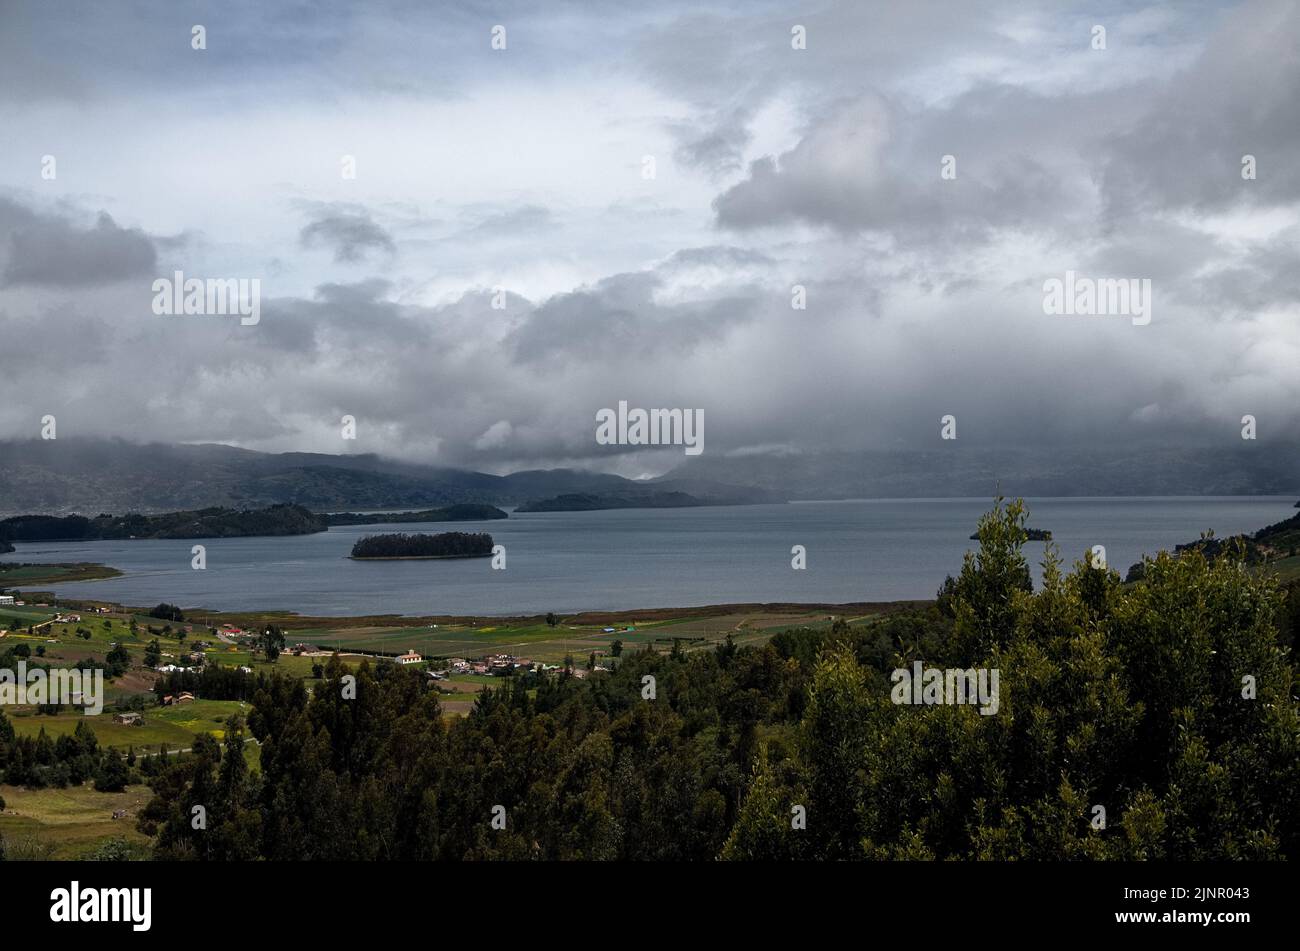 Panoramablick auf einen See bei bewölktem Wetter mit einer Insel in der Mitte Stockfoto